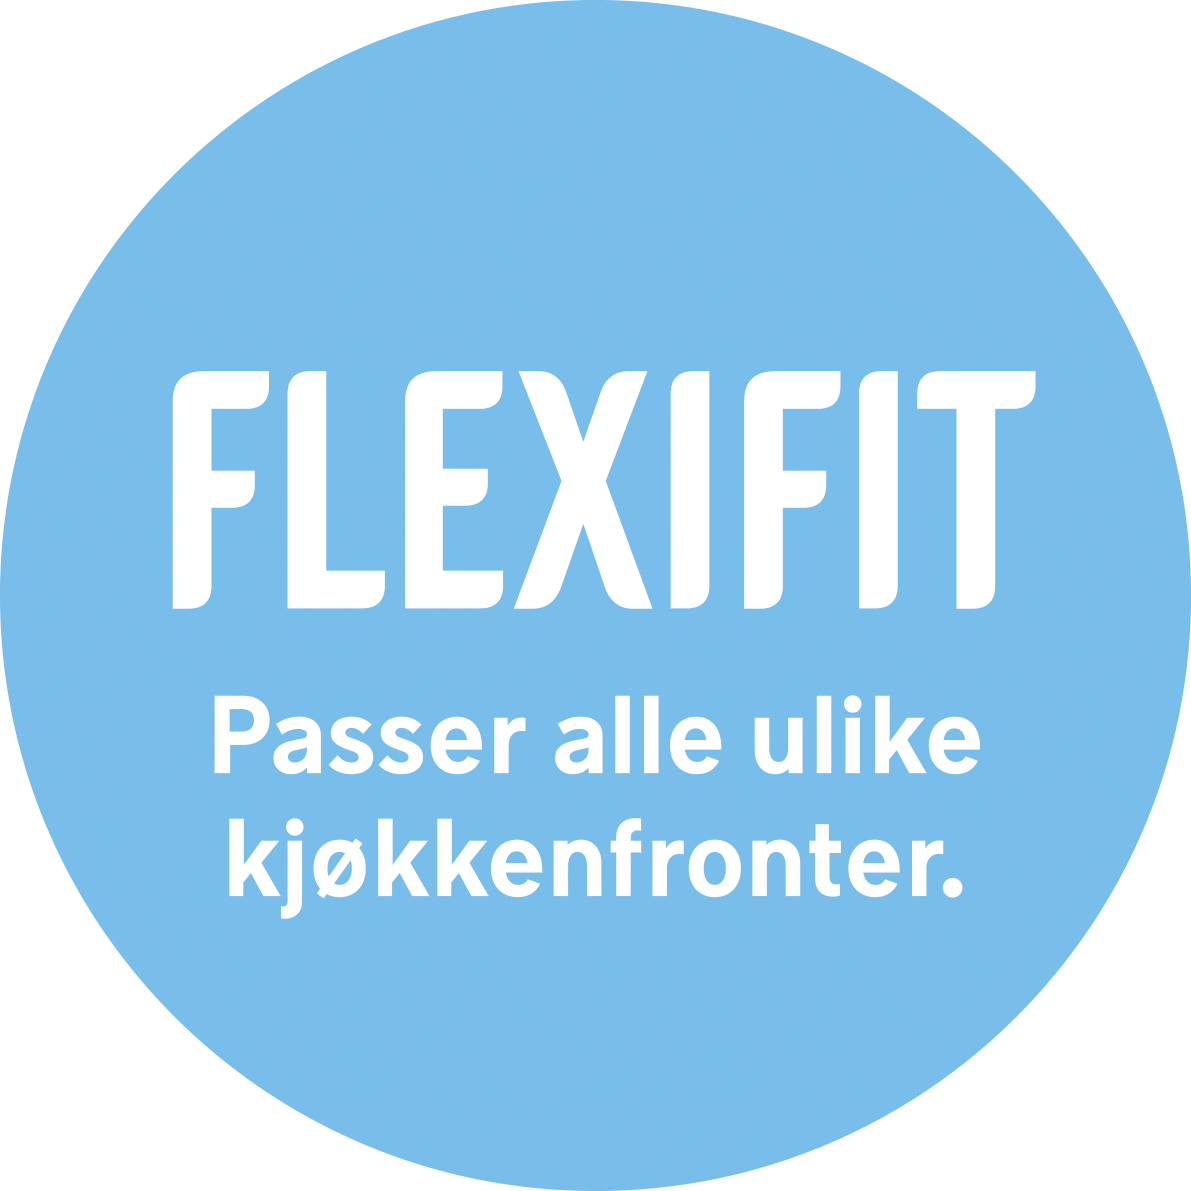 FLEXIFIT er en smartløsning og passer på de fleste kjøkkenfronter mellom 70-80 cm